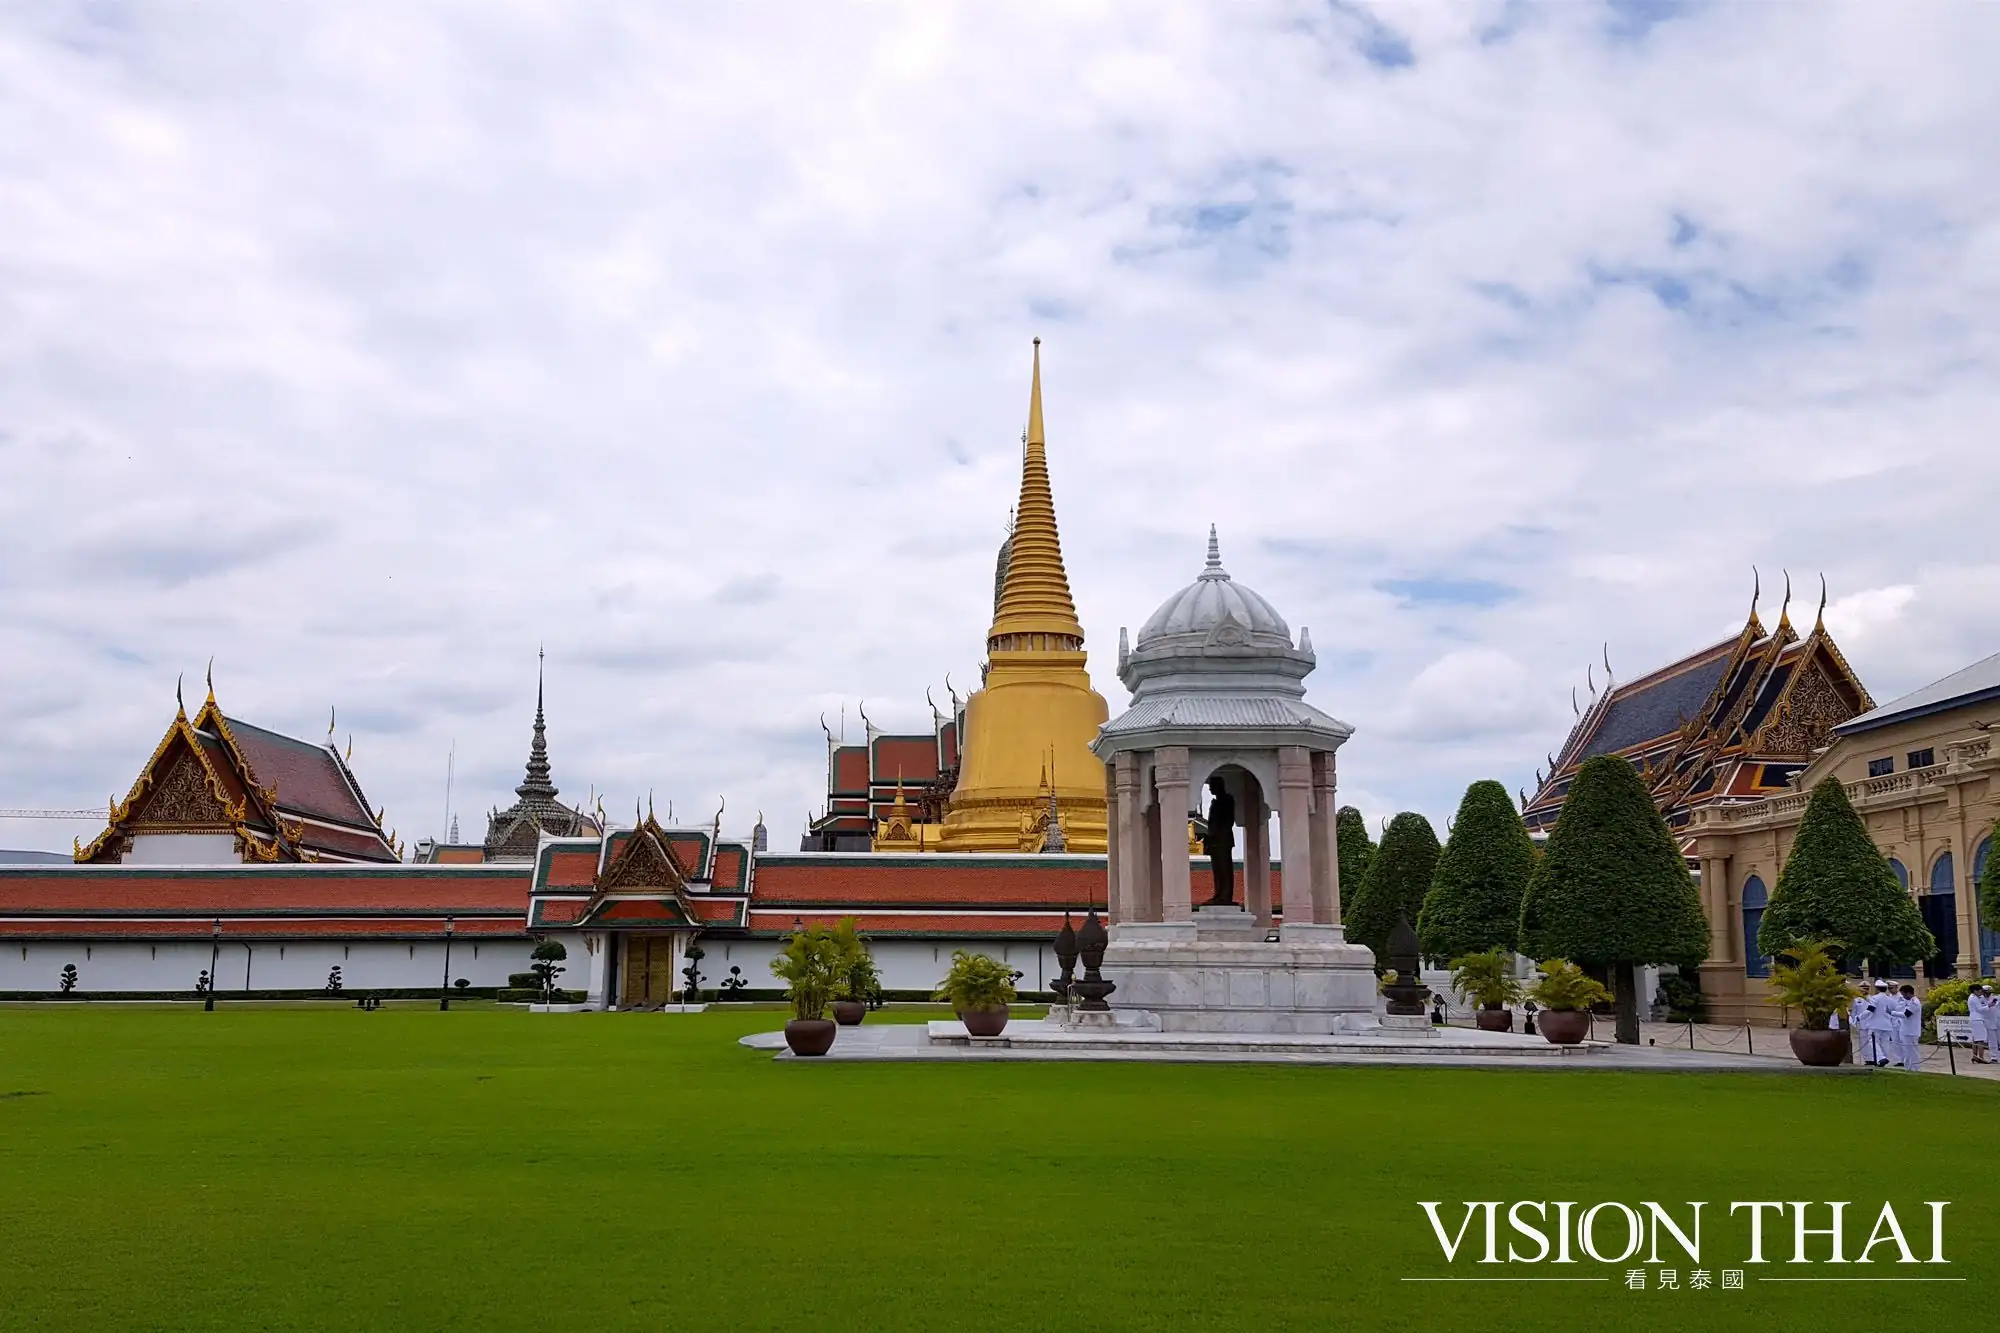 曼谷大皇宫 The Grand Palace 泰国现存规模最大最完善的宫廷建筑